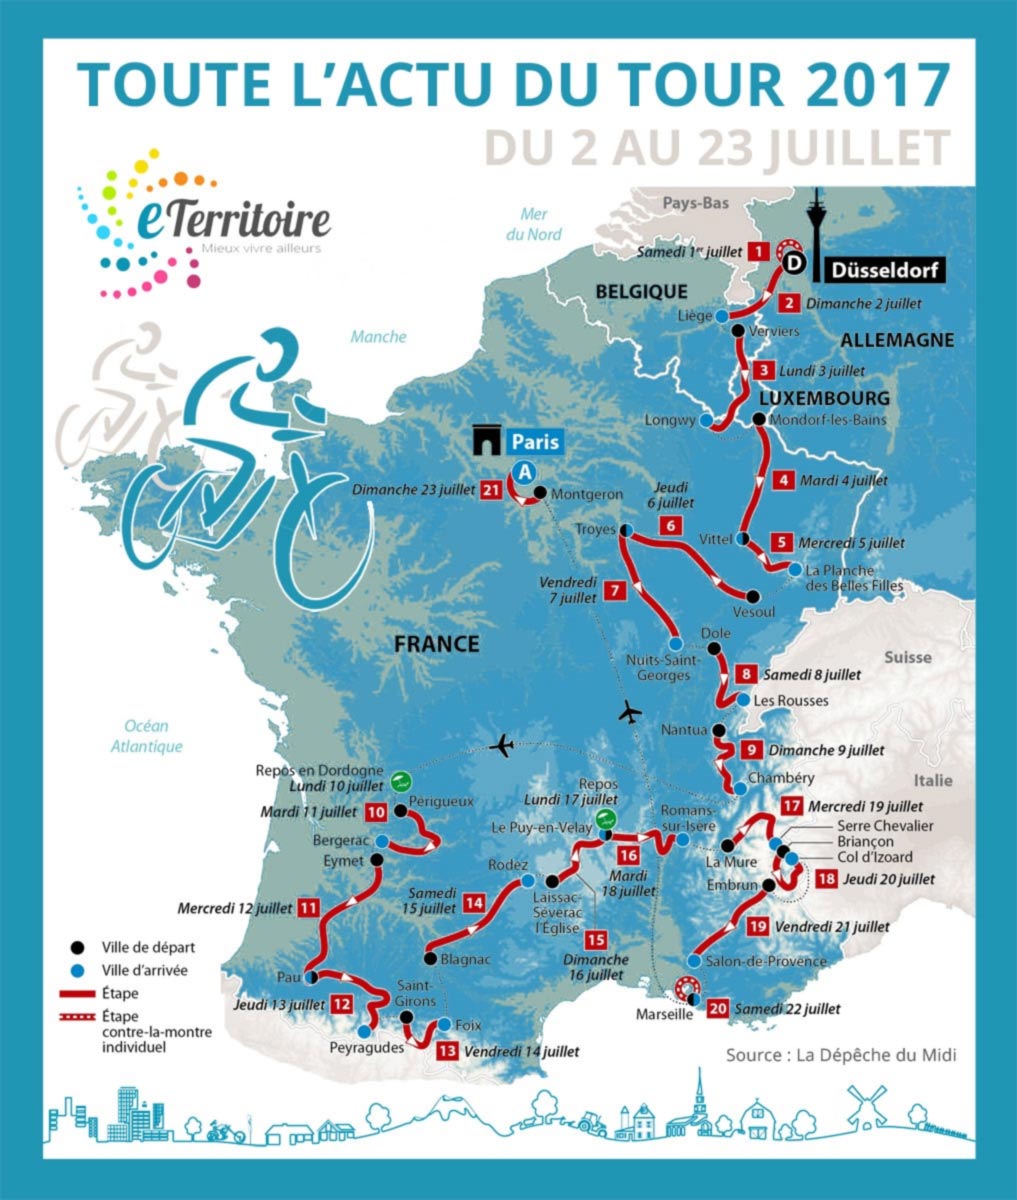 Tour de France 2017 - Espaly-Saint-Marcel - Passage d'étape